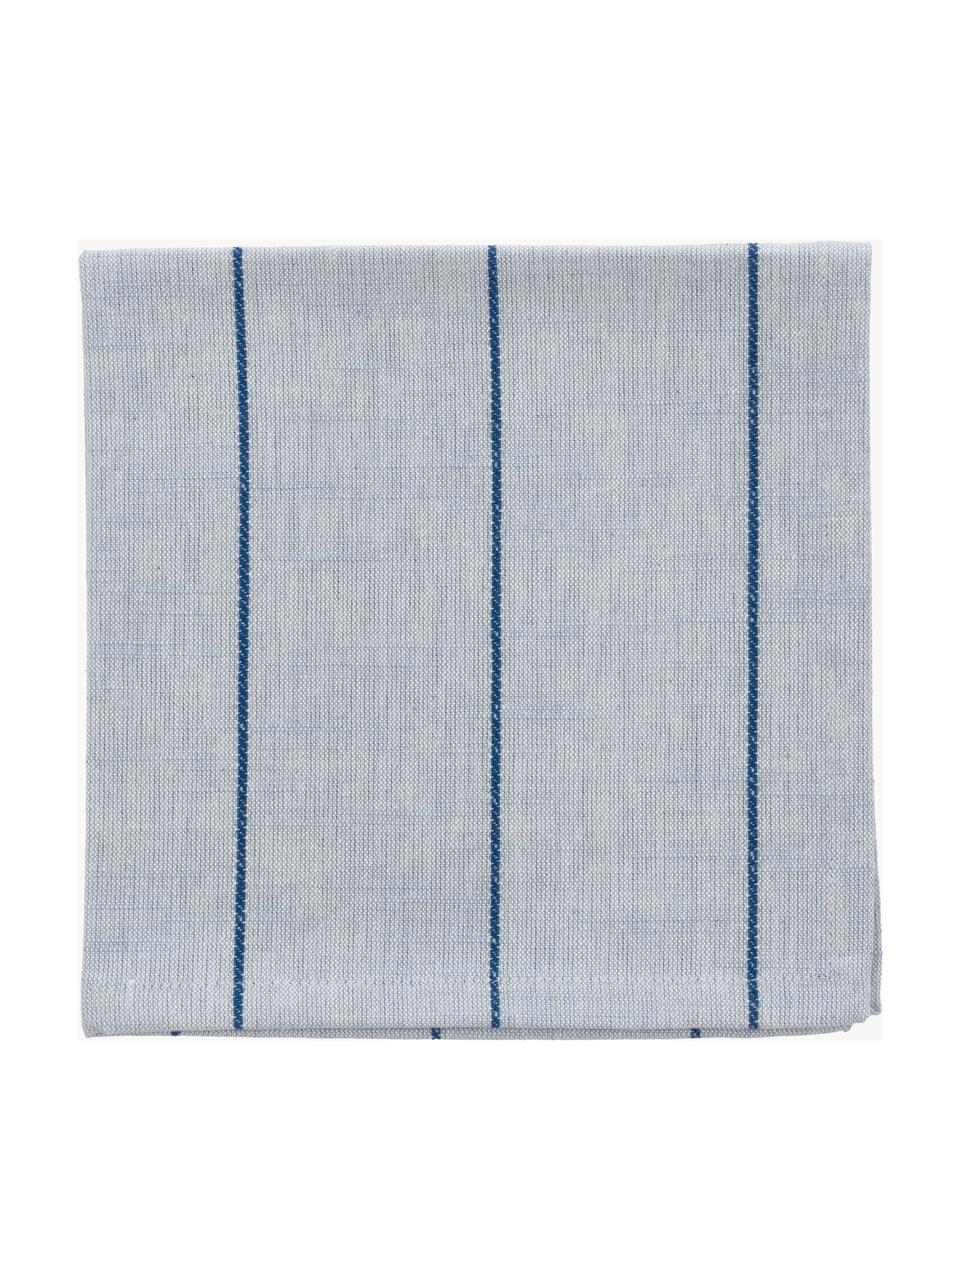 Serwetka z tkaniny Line, 4 szt., 100% bawełna, Jasny niebieski, ciemny niebieski, S 40 x D 40 cm